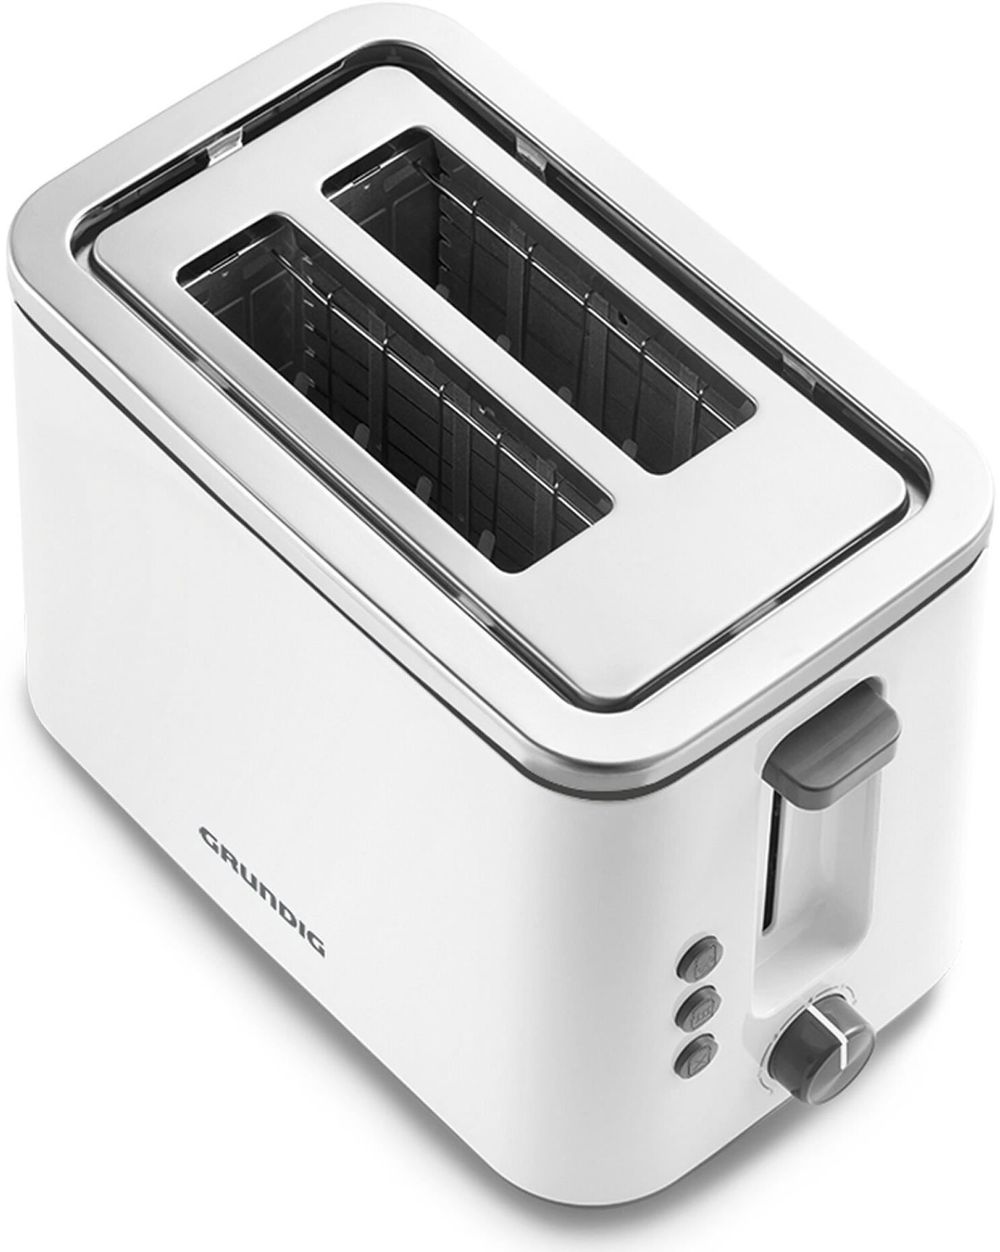 Grundig TA 5860 Toaster weiß / schwarz